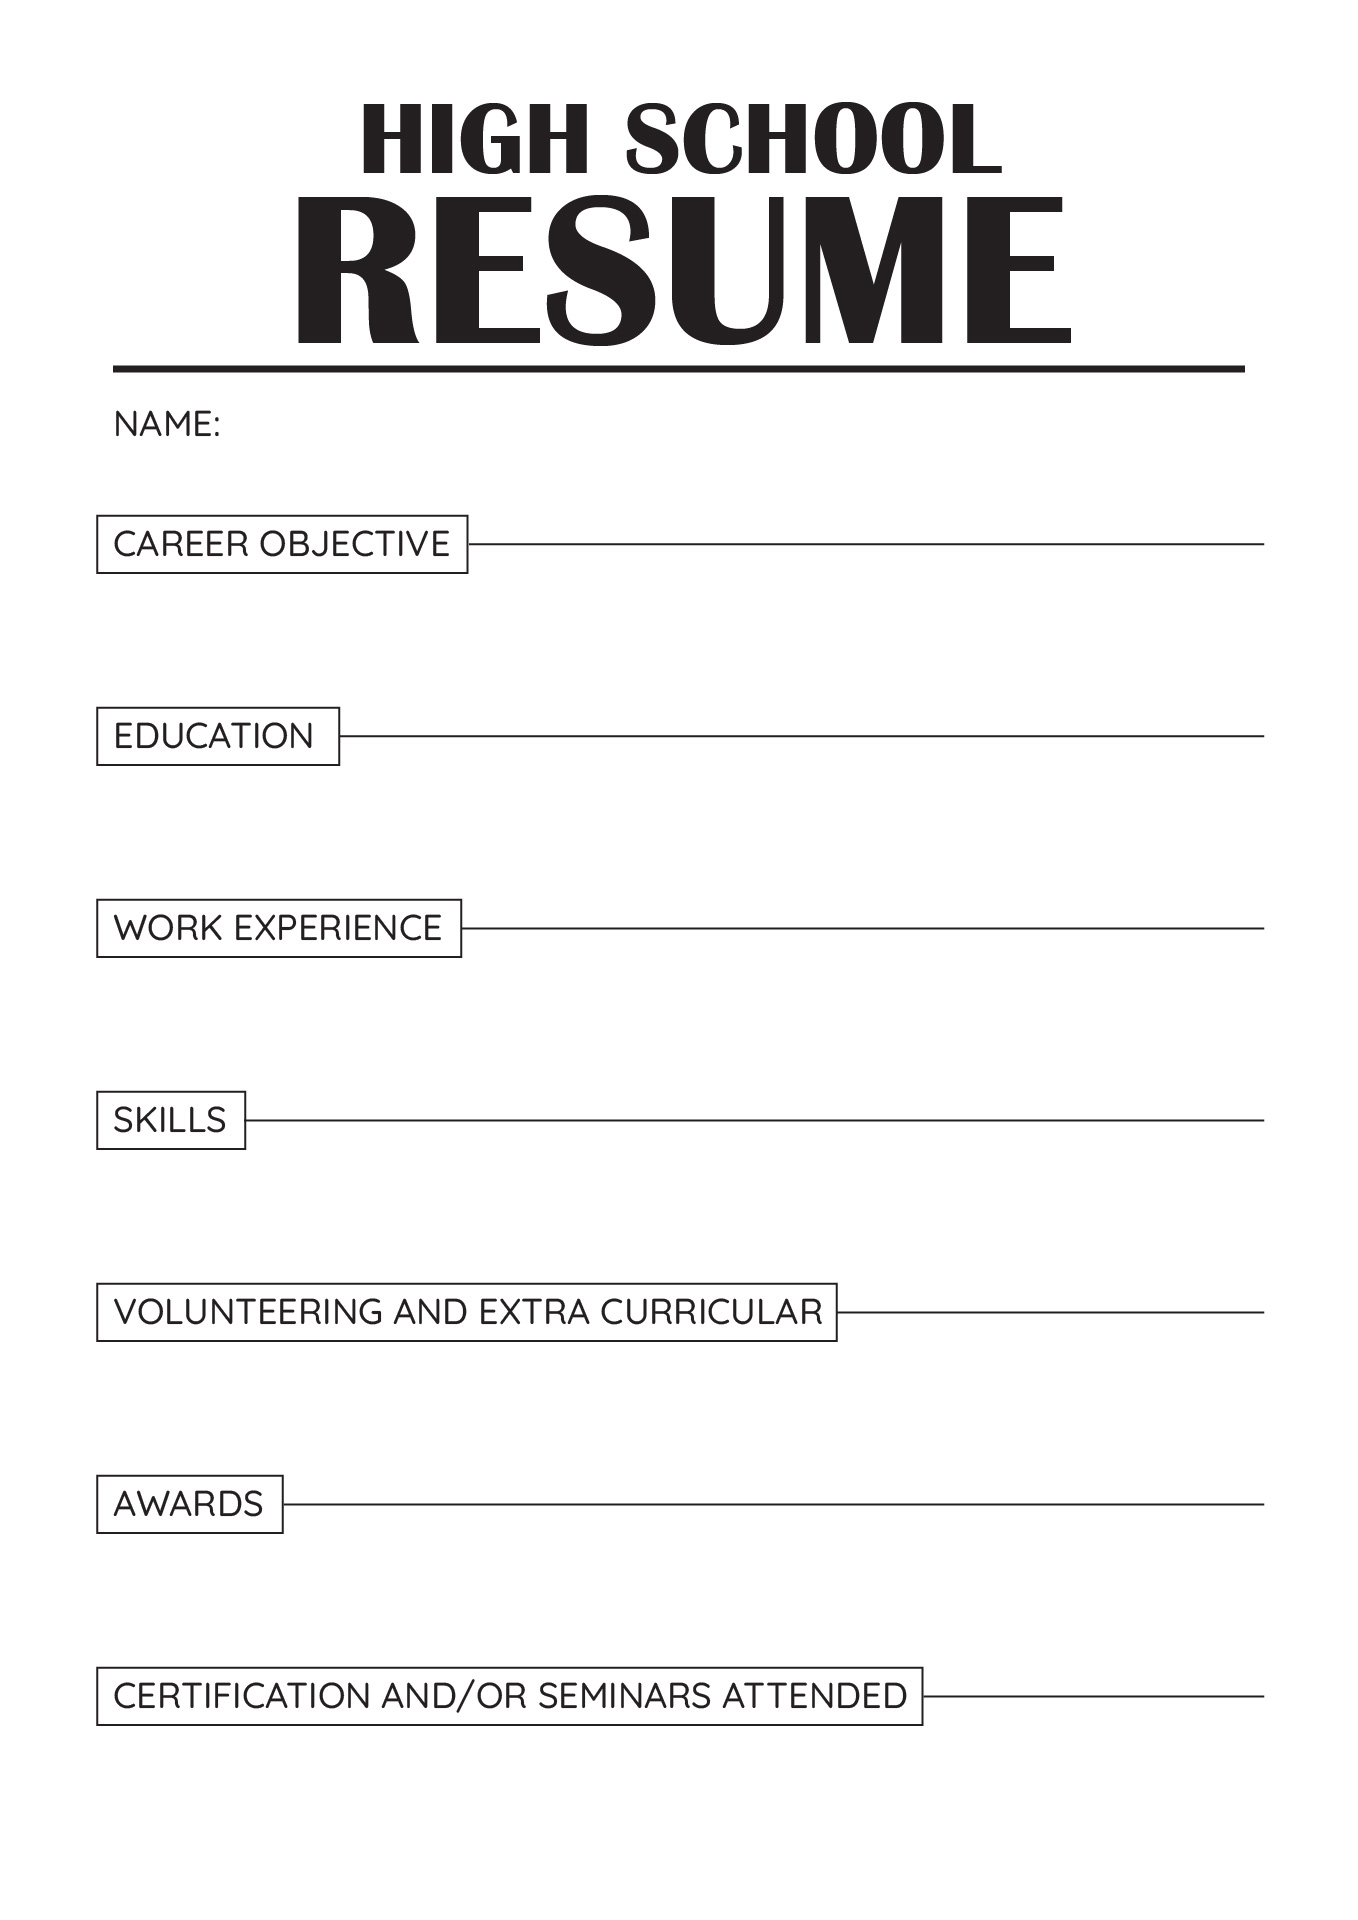 High School Resume Template Worksheet